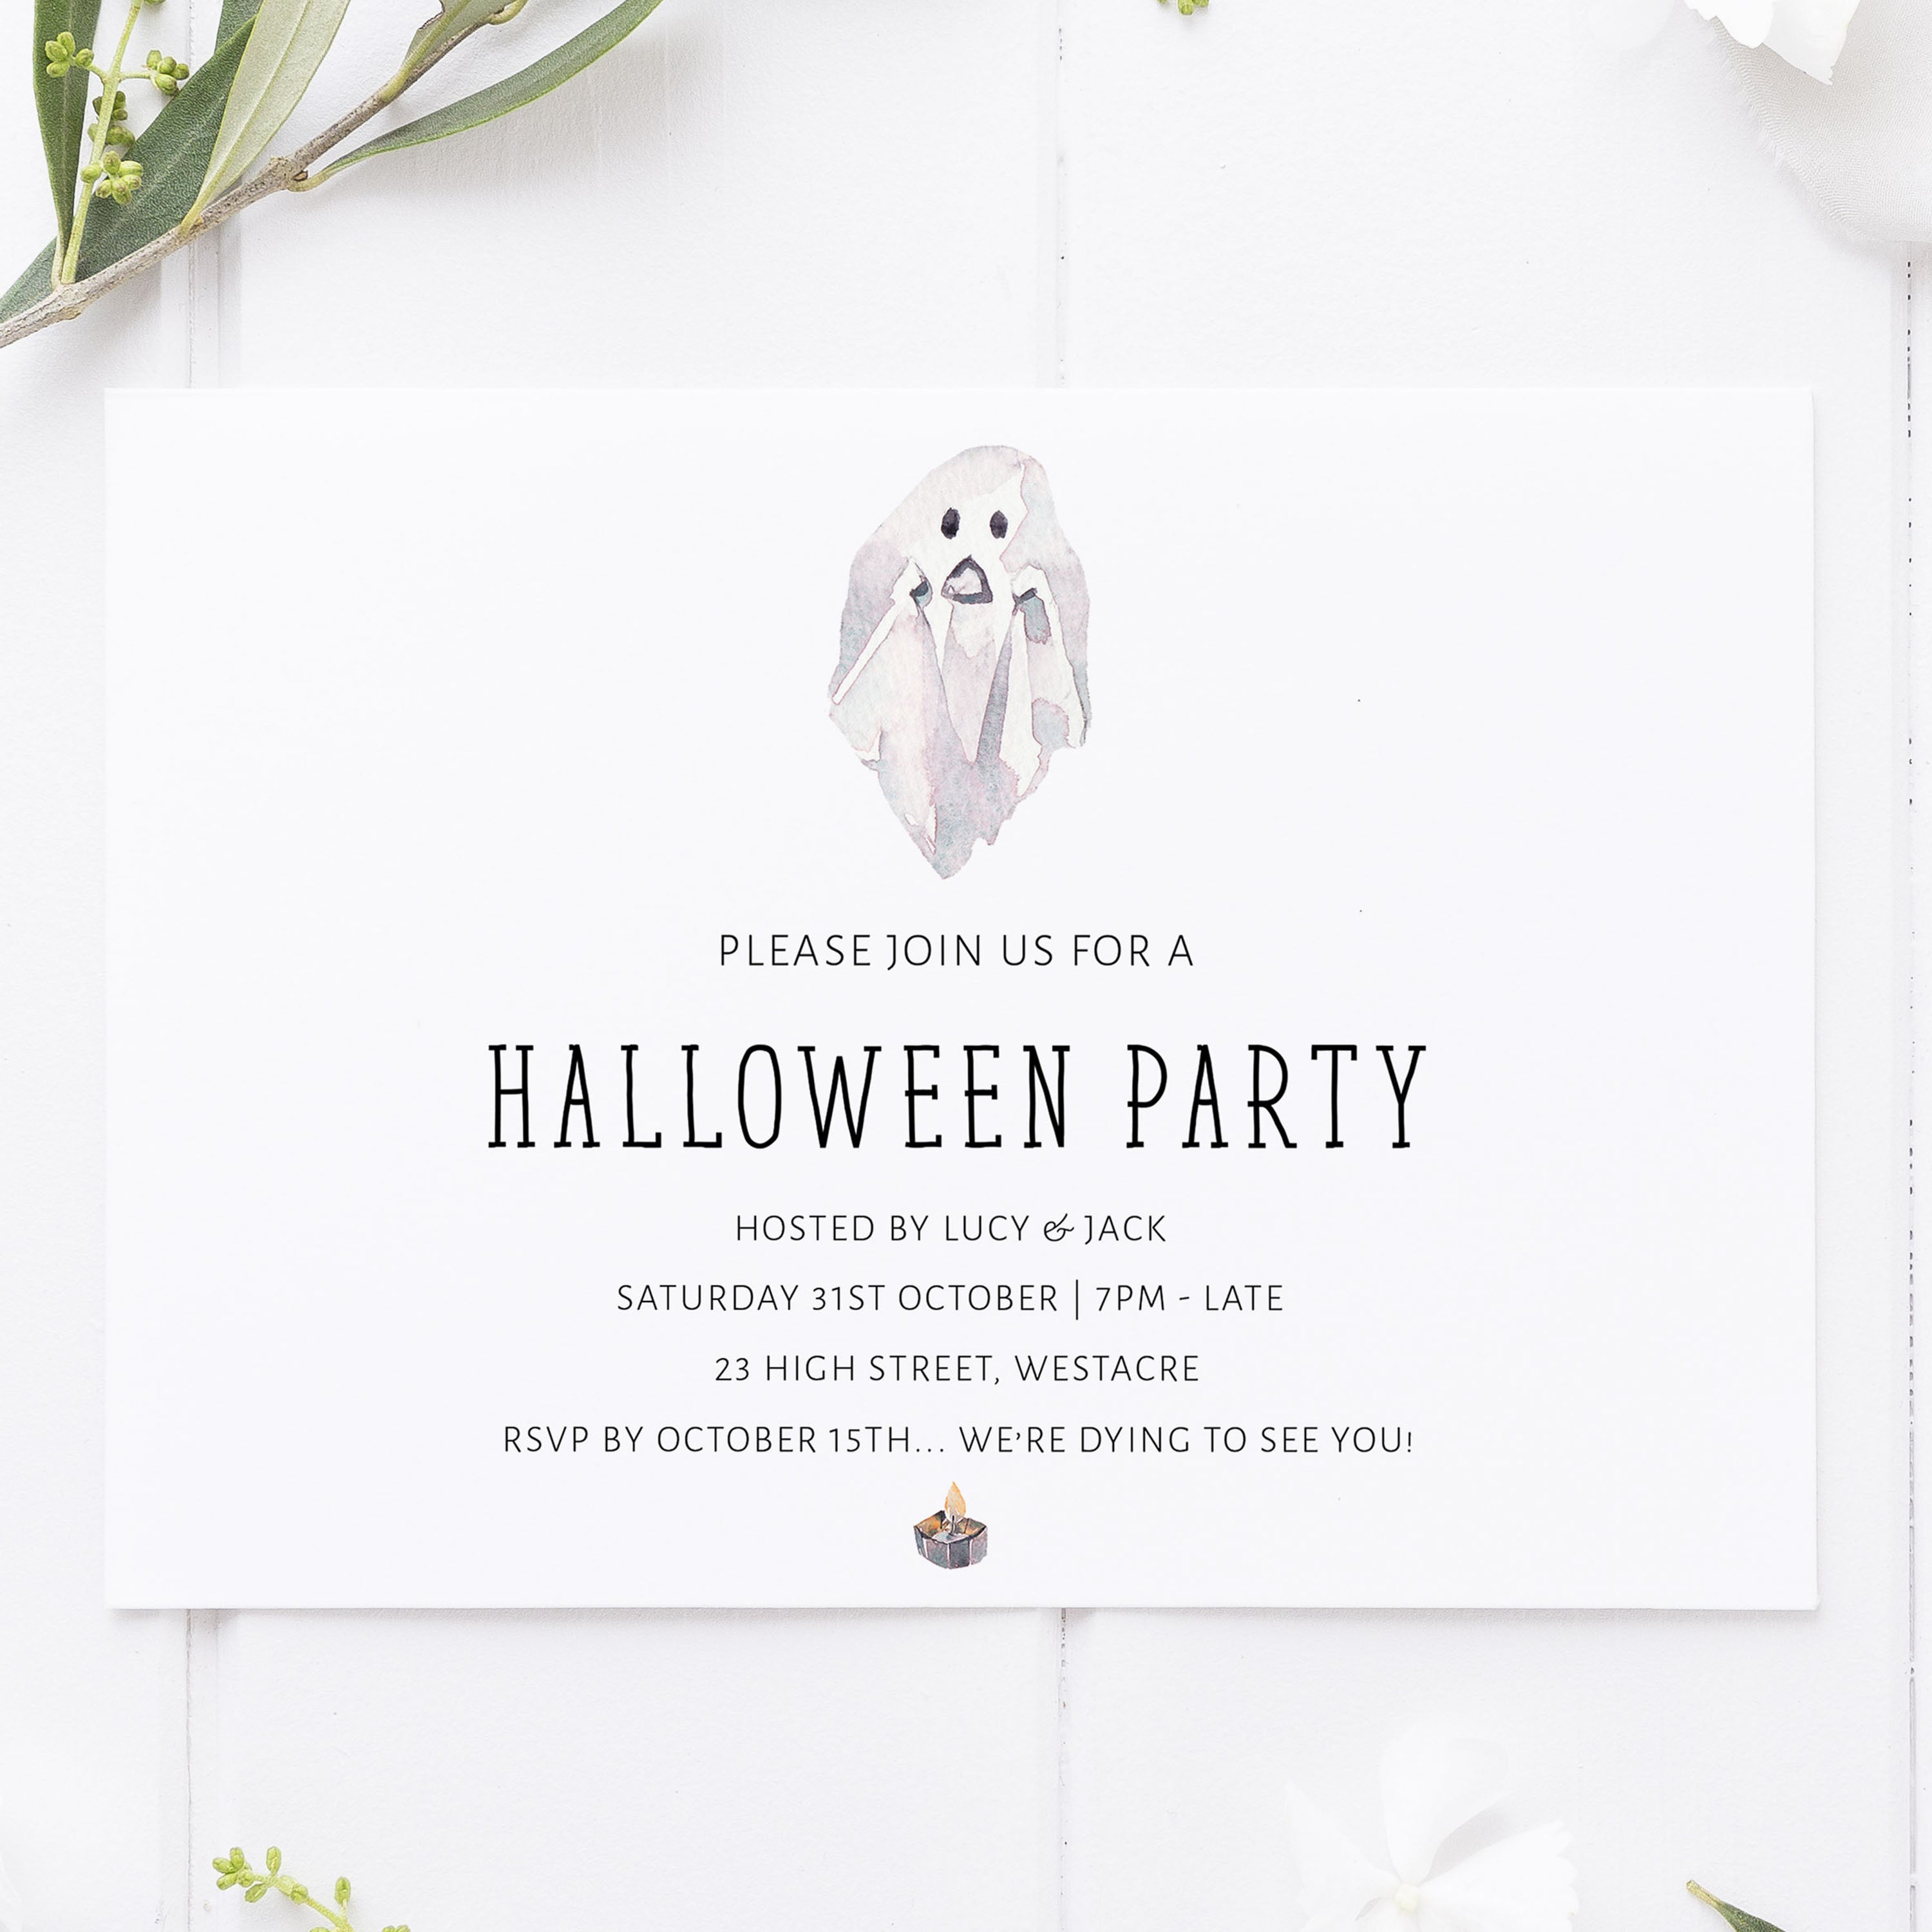 spooky ghost invitation, halloween printable invitations, editable halloween invitations, fun halloween invites, halloween invites, halloween ideashalloween invitations, editable halloween invitations, printable halloween invitations, spooky halloween invitations